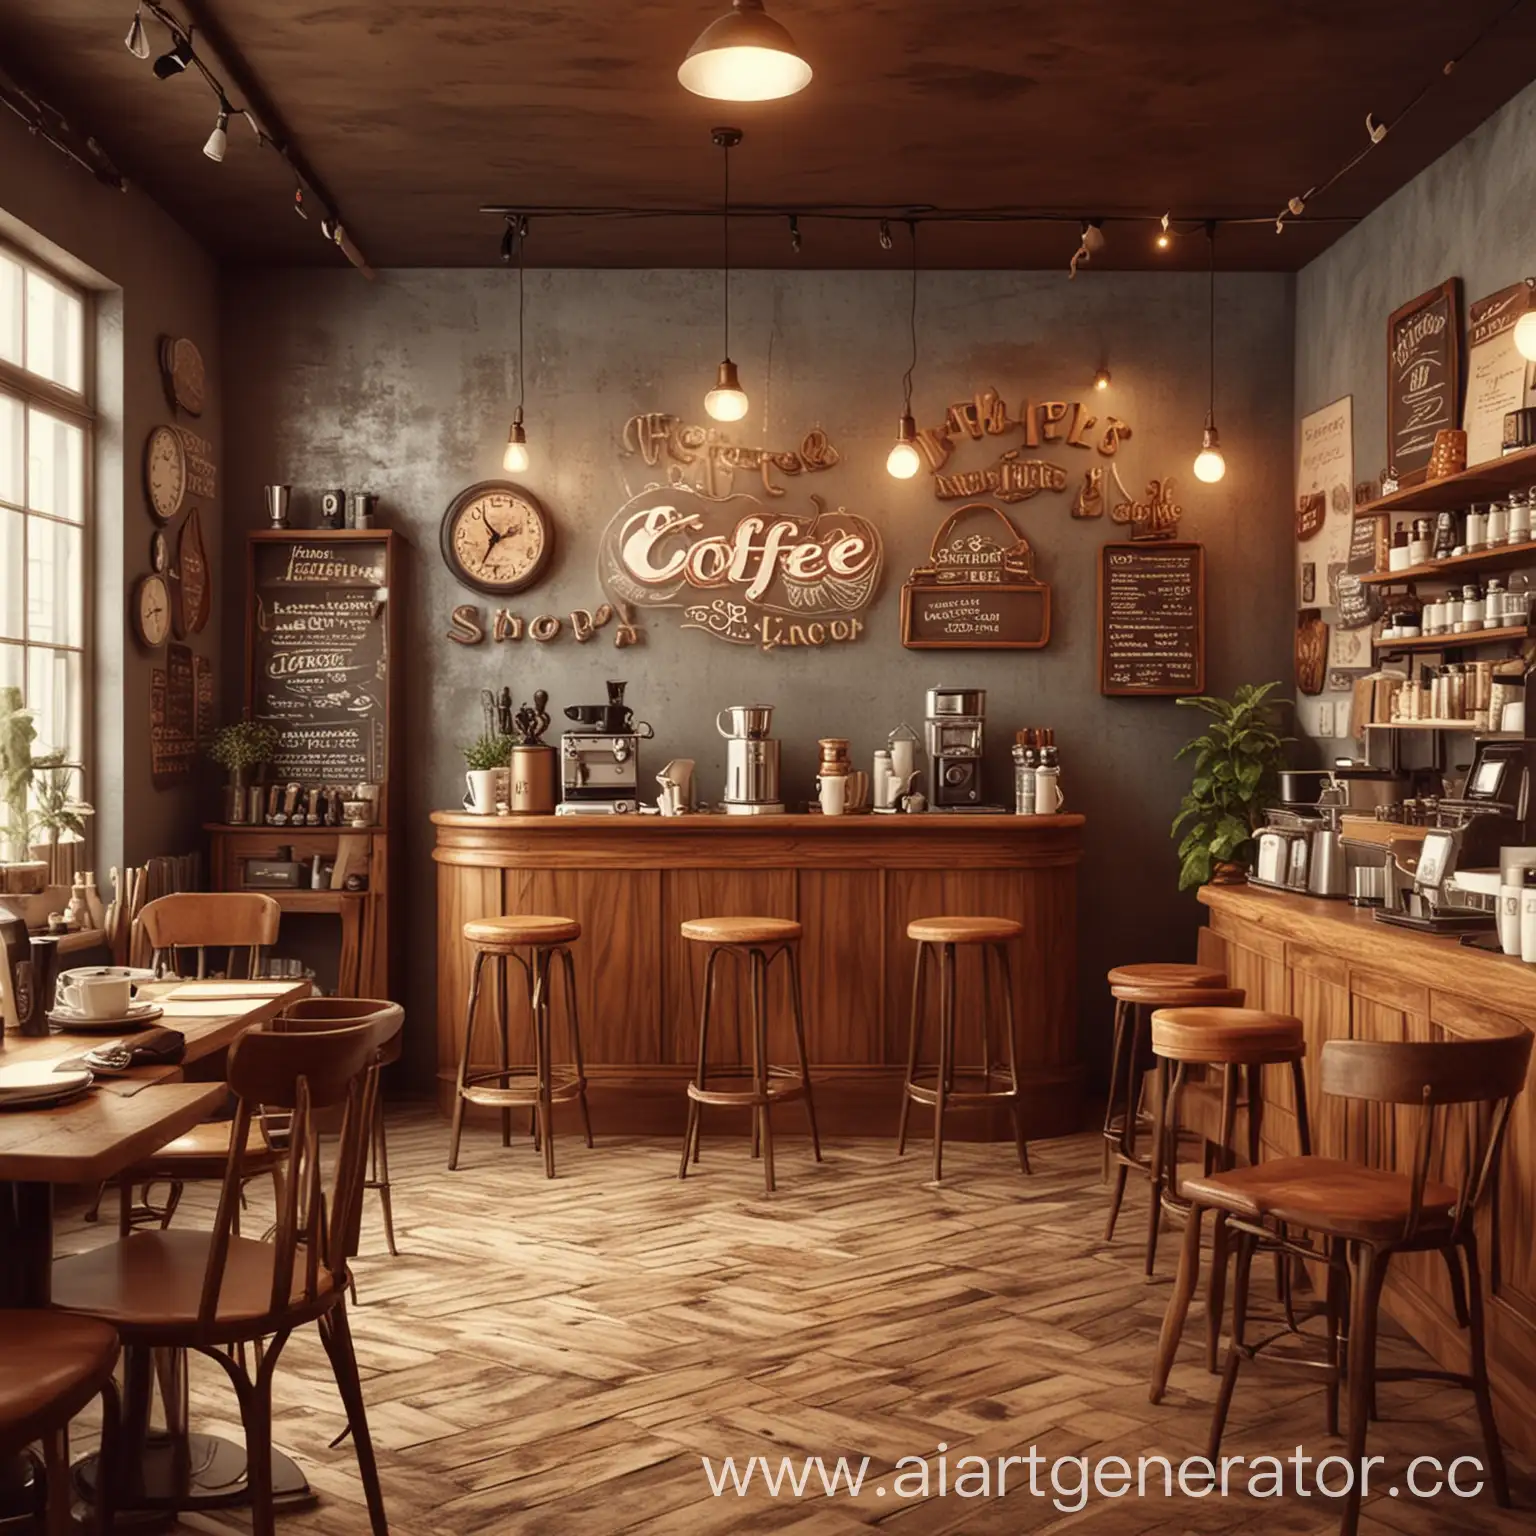 Vibrant-Scenes-Coffee-Shop-in-Motion-Retro-Style